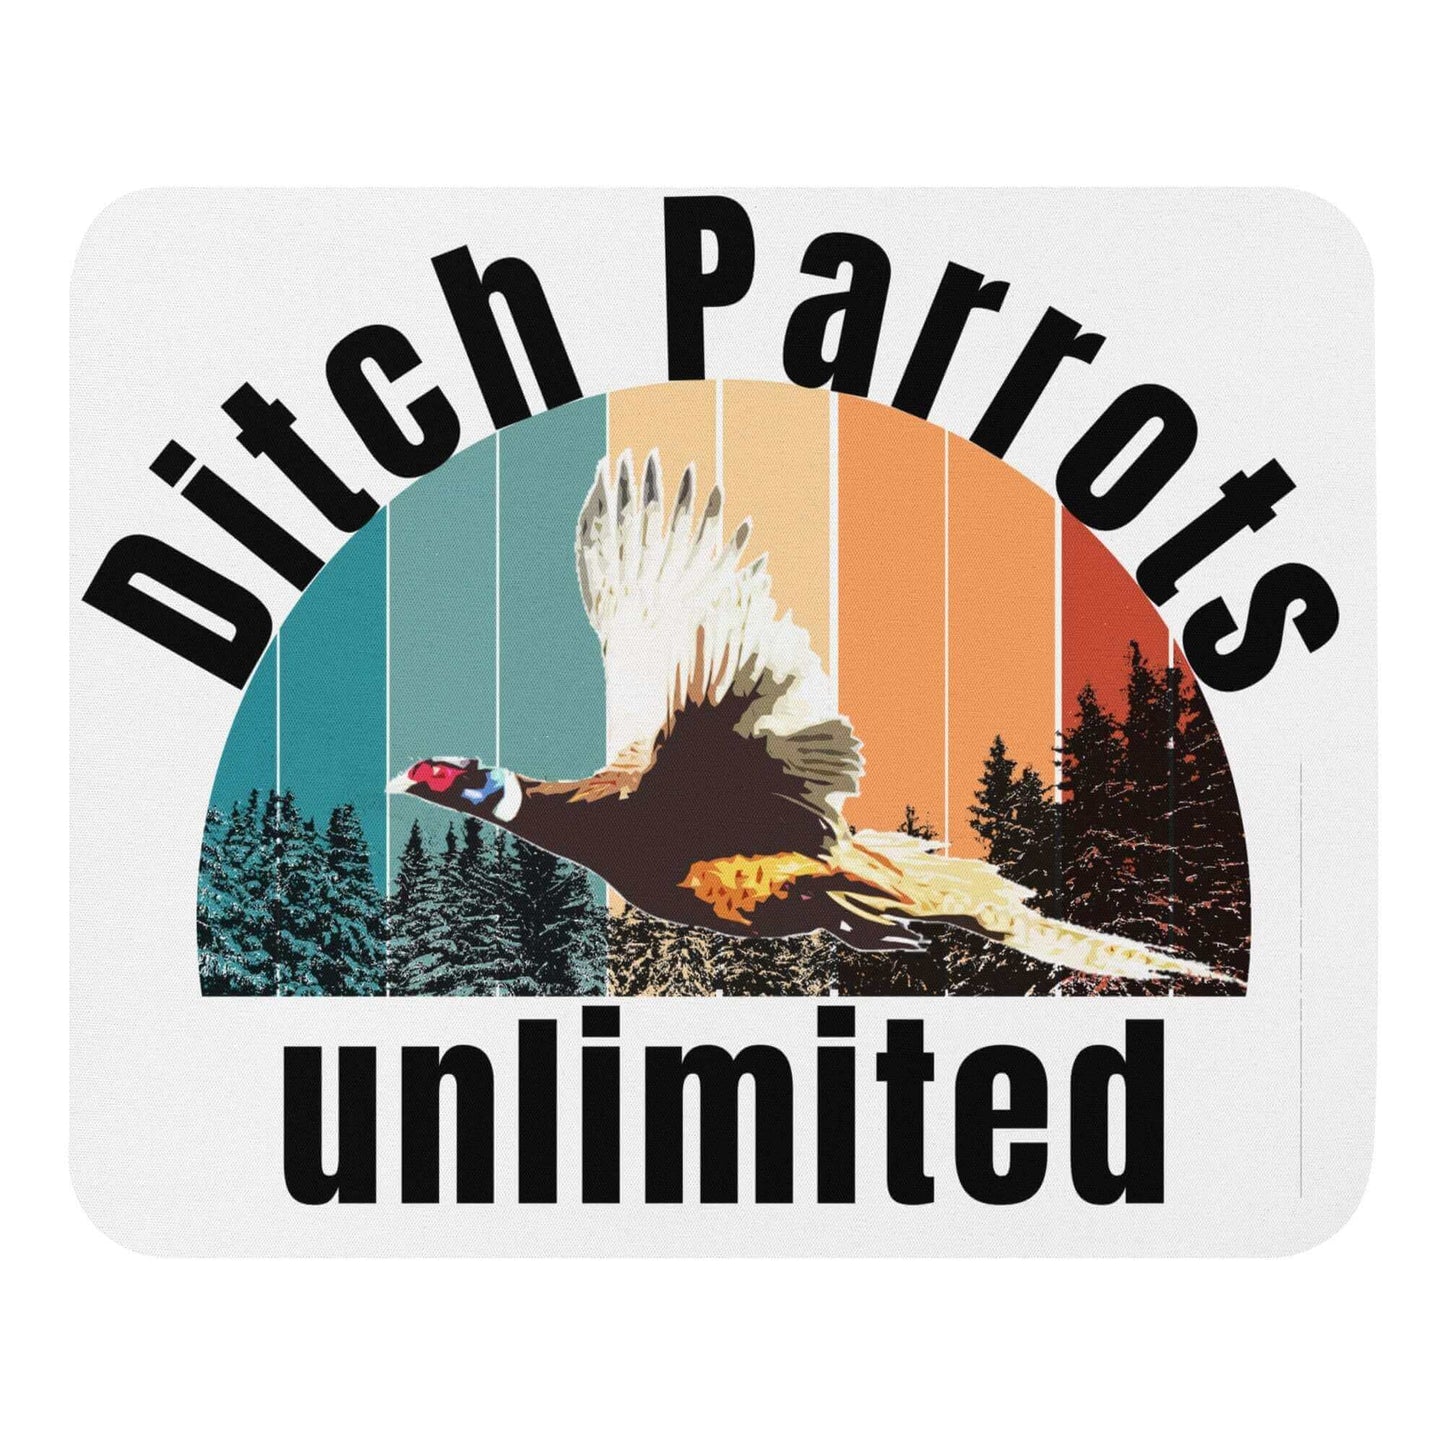 Ditch Parrots Unlimited - Mouse pad - Horrible Designs